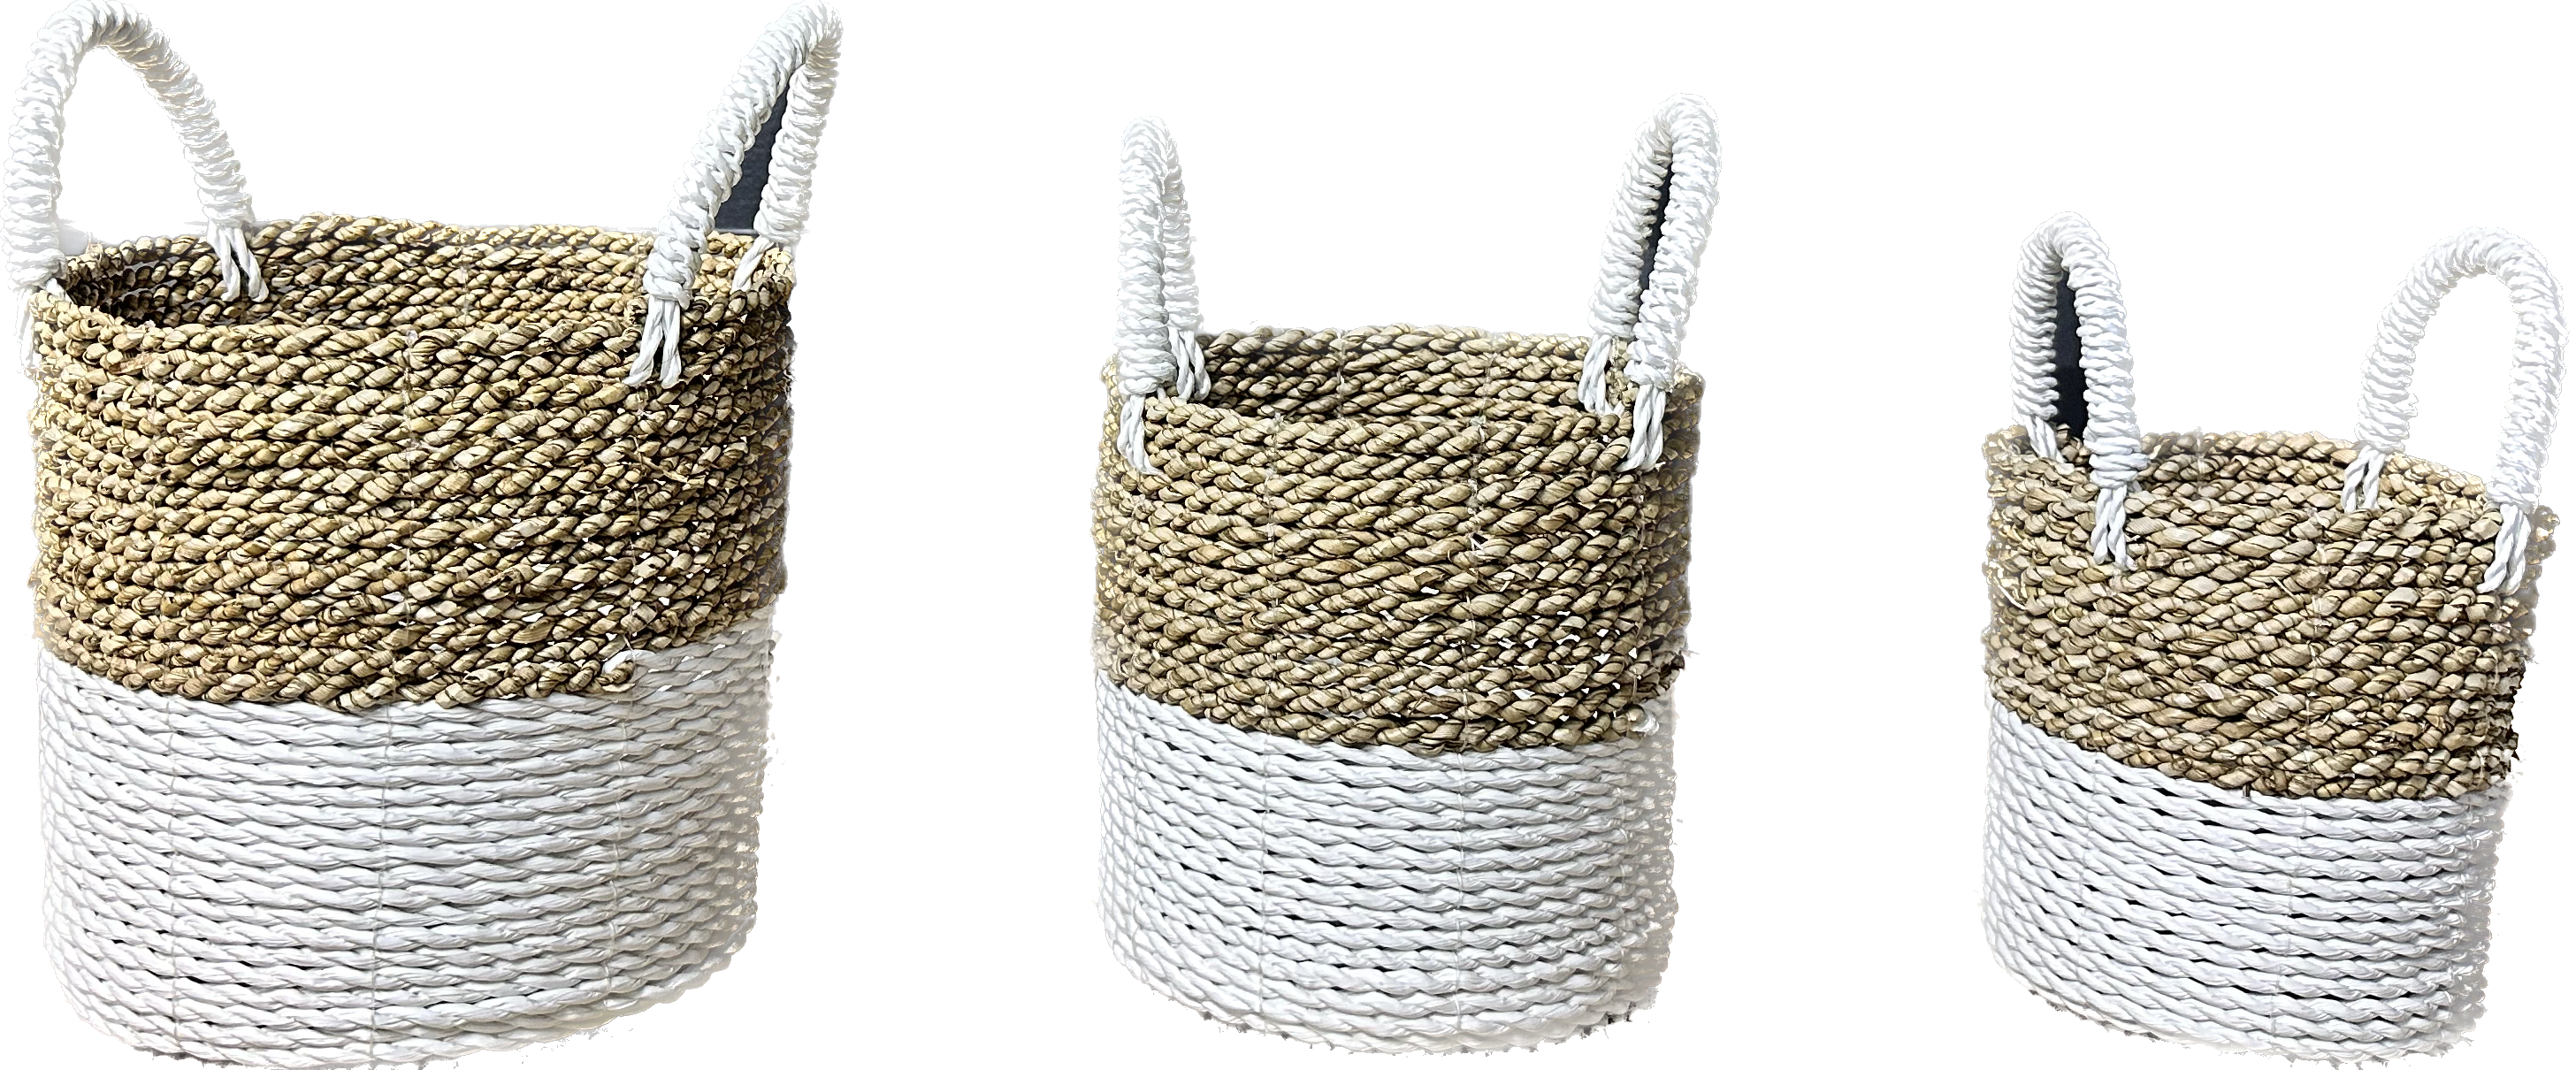 Lilo Two-tone Wicker Storage Basket Set of 3